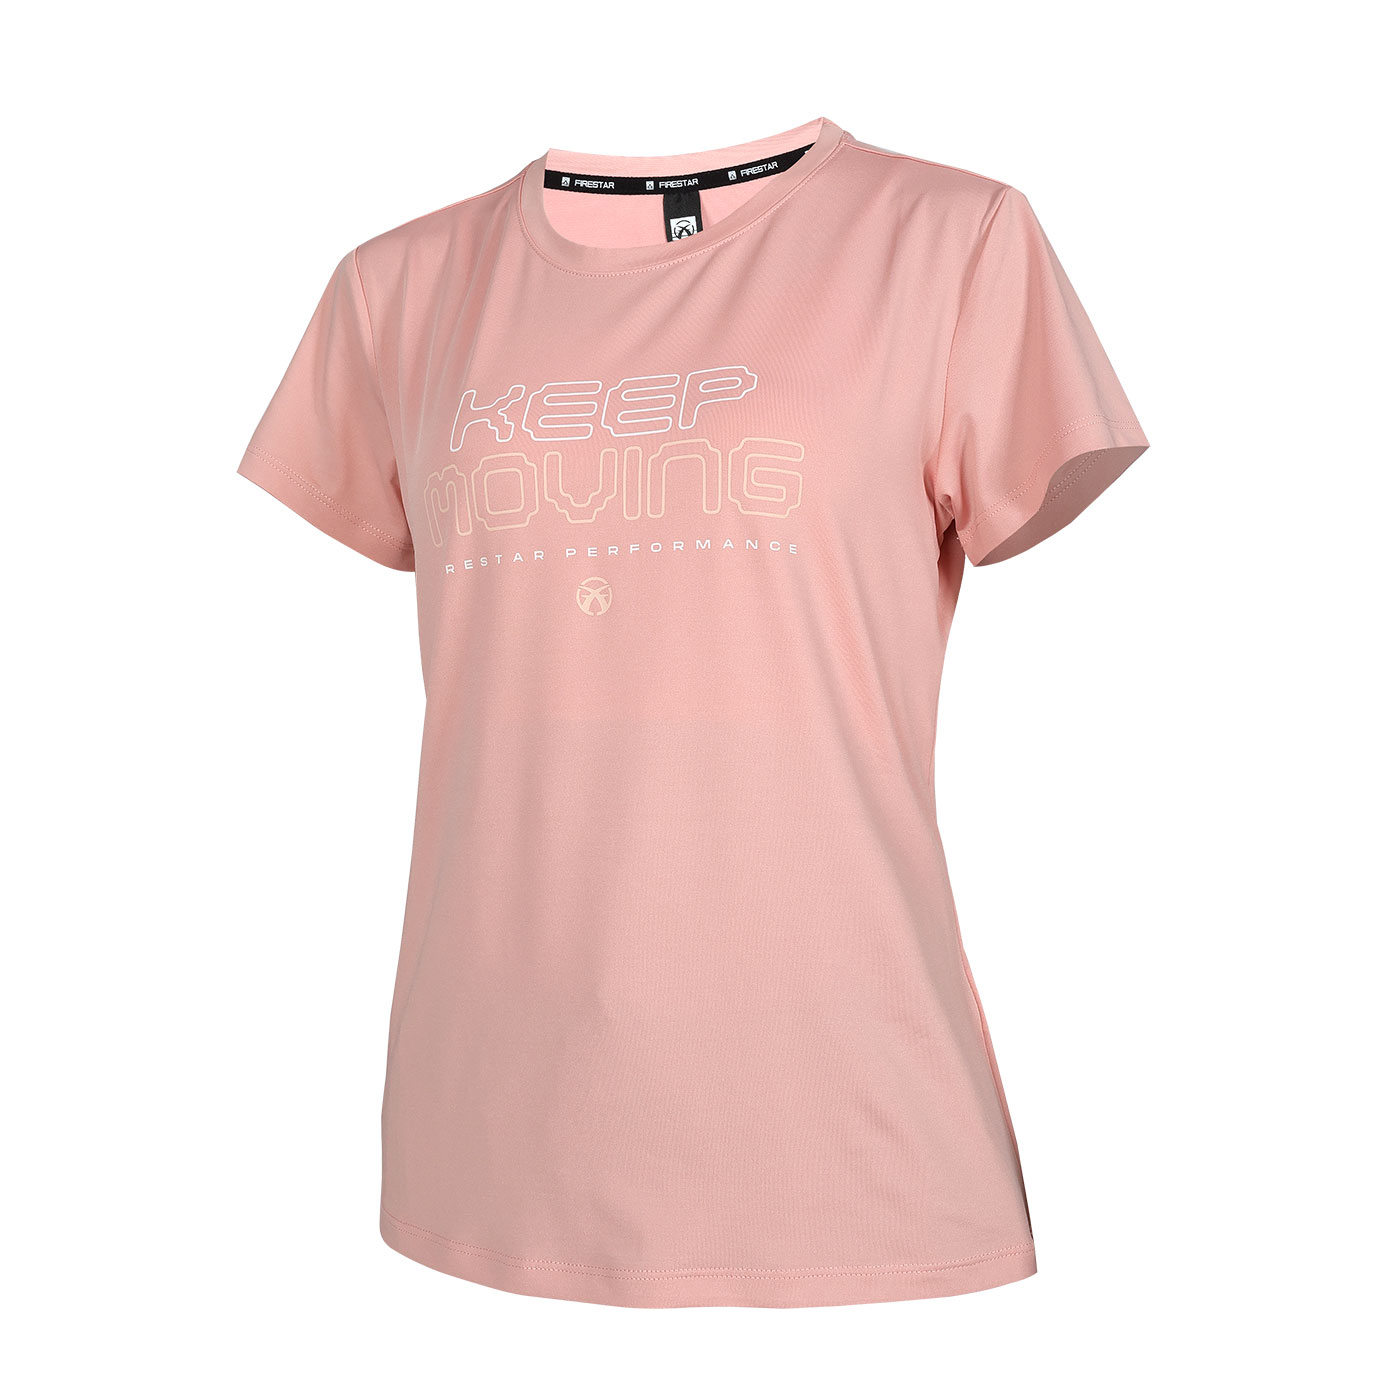 FIRESTAR 女彈性印花短袖T恤  DL462-43